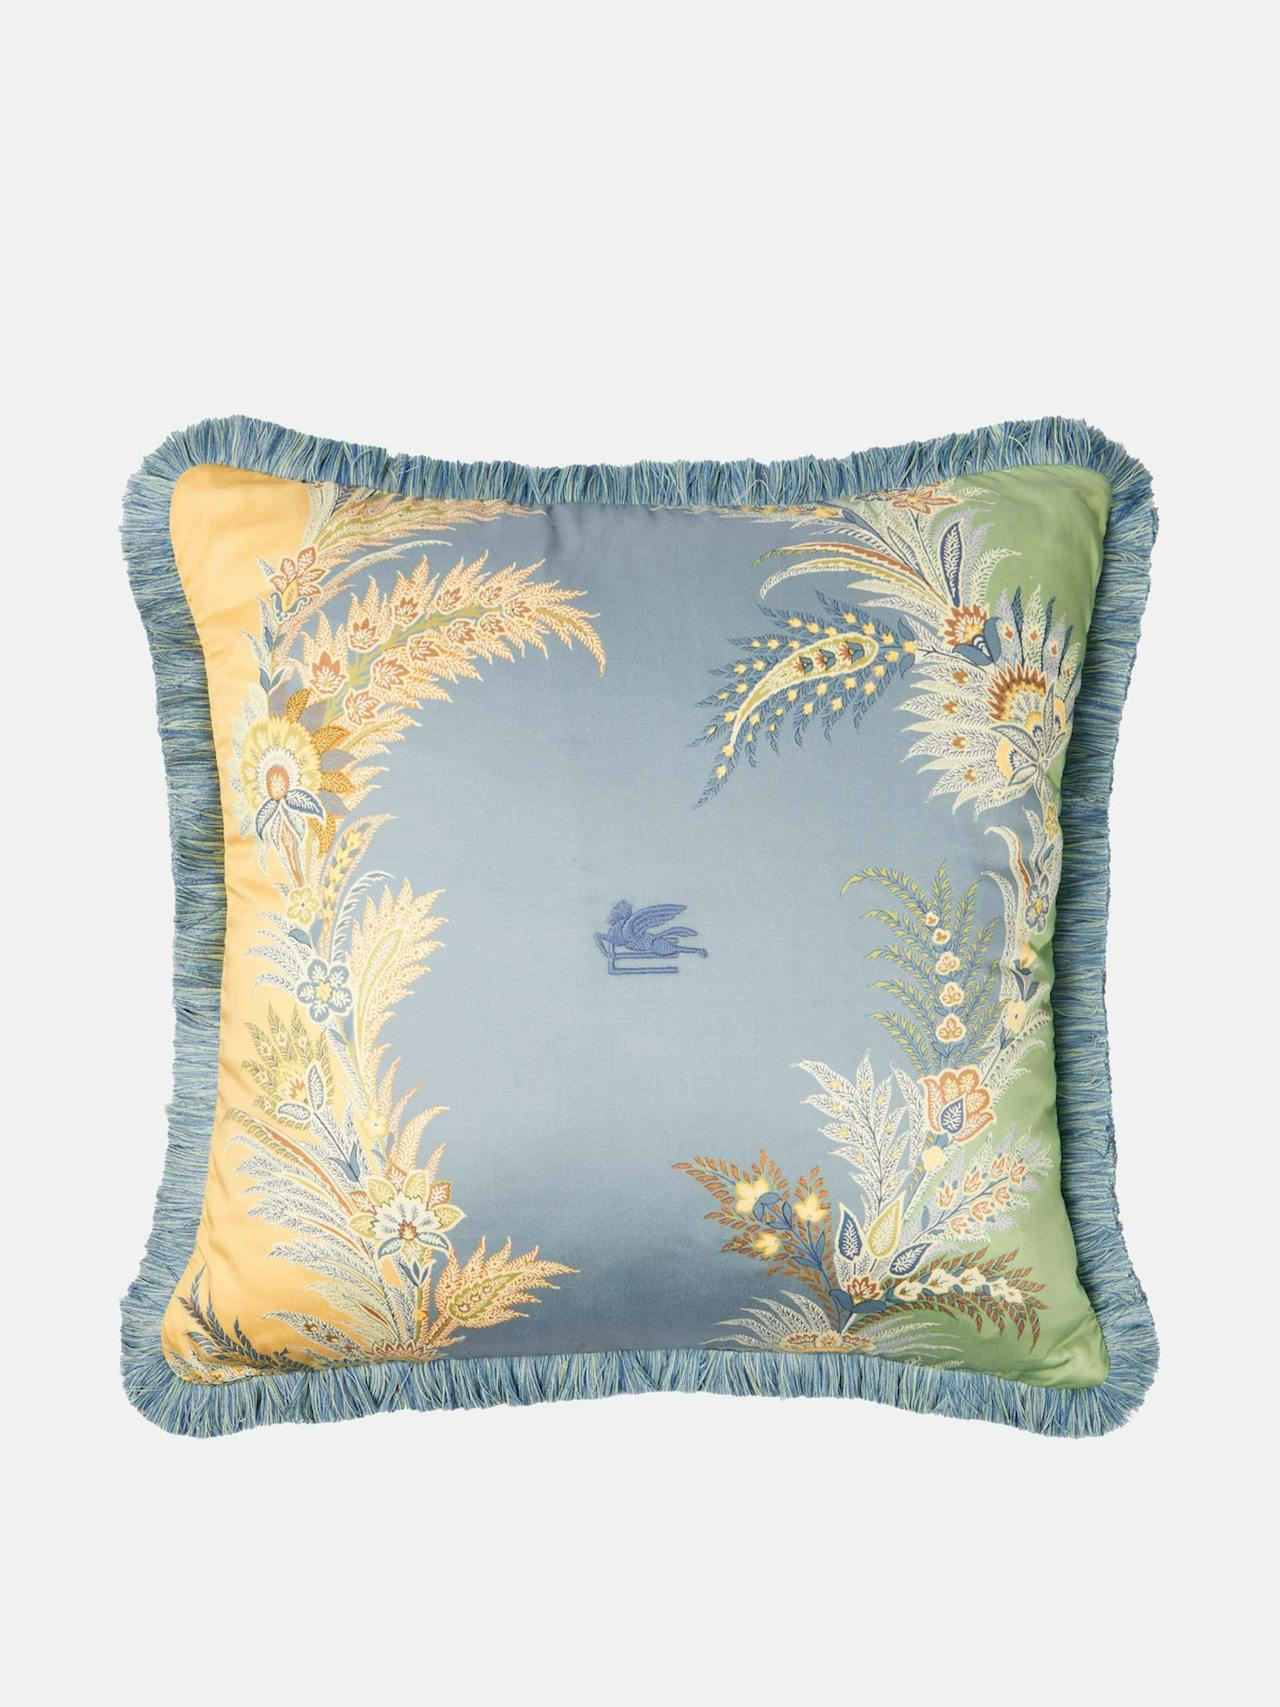 Pegaso embroidered cotton satin cushion